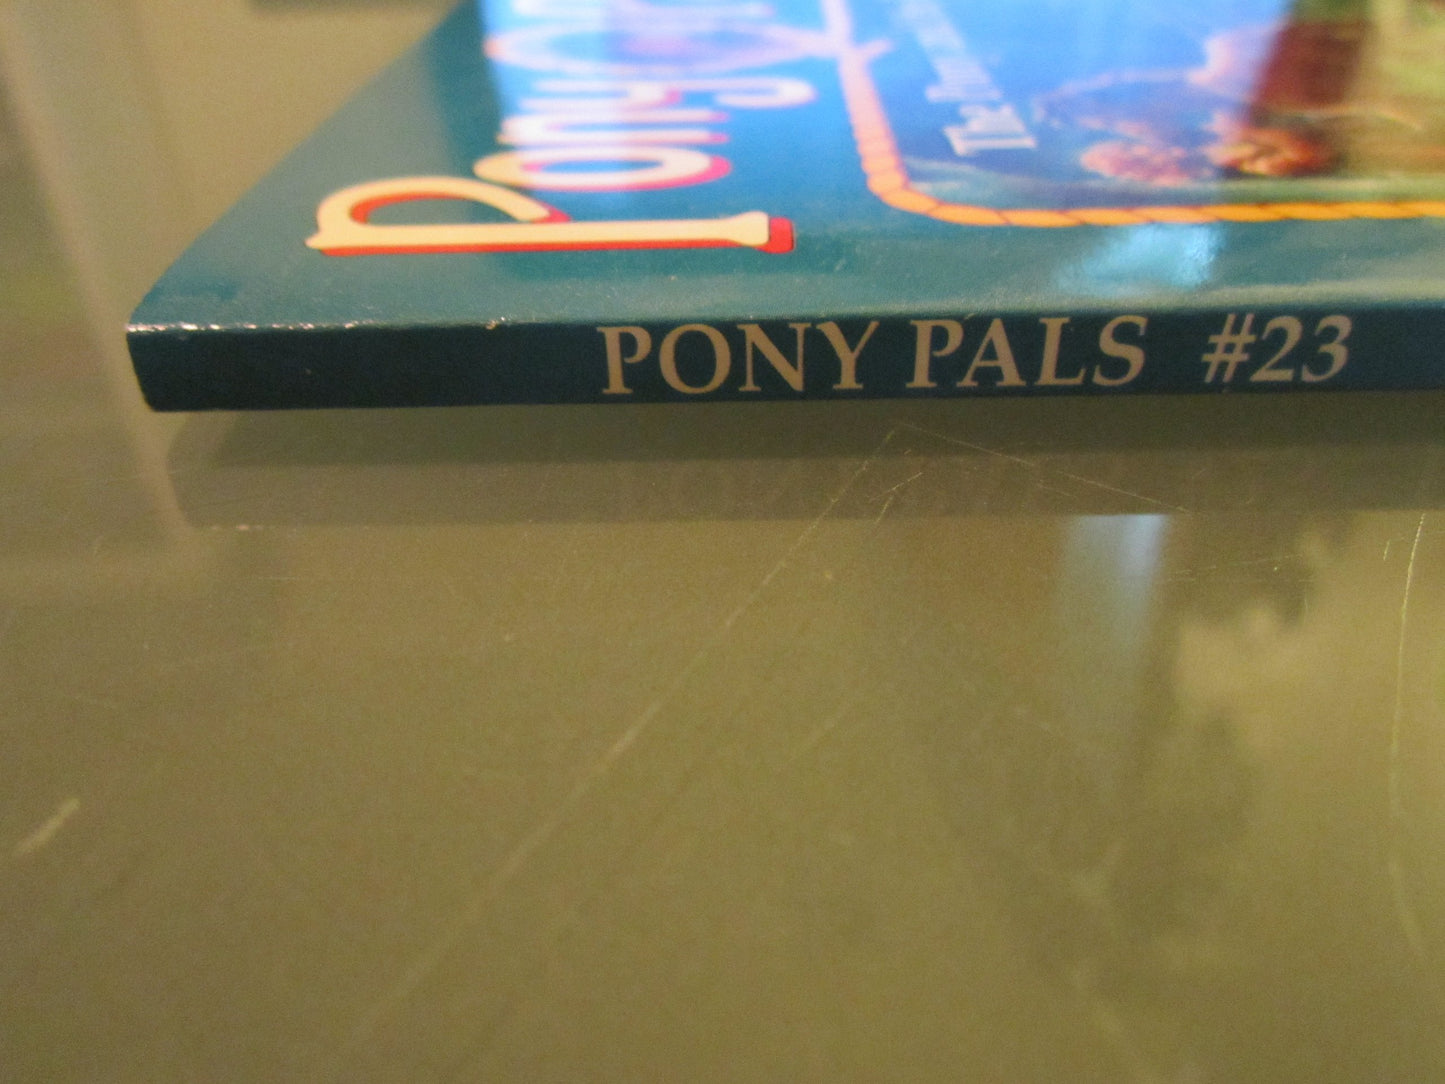 The Pony and the Bear (Pony Pals No. 23) - 4199